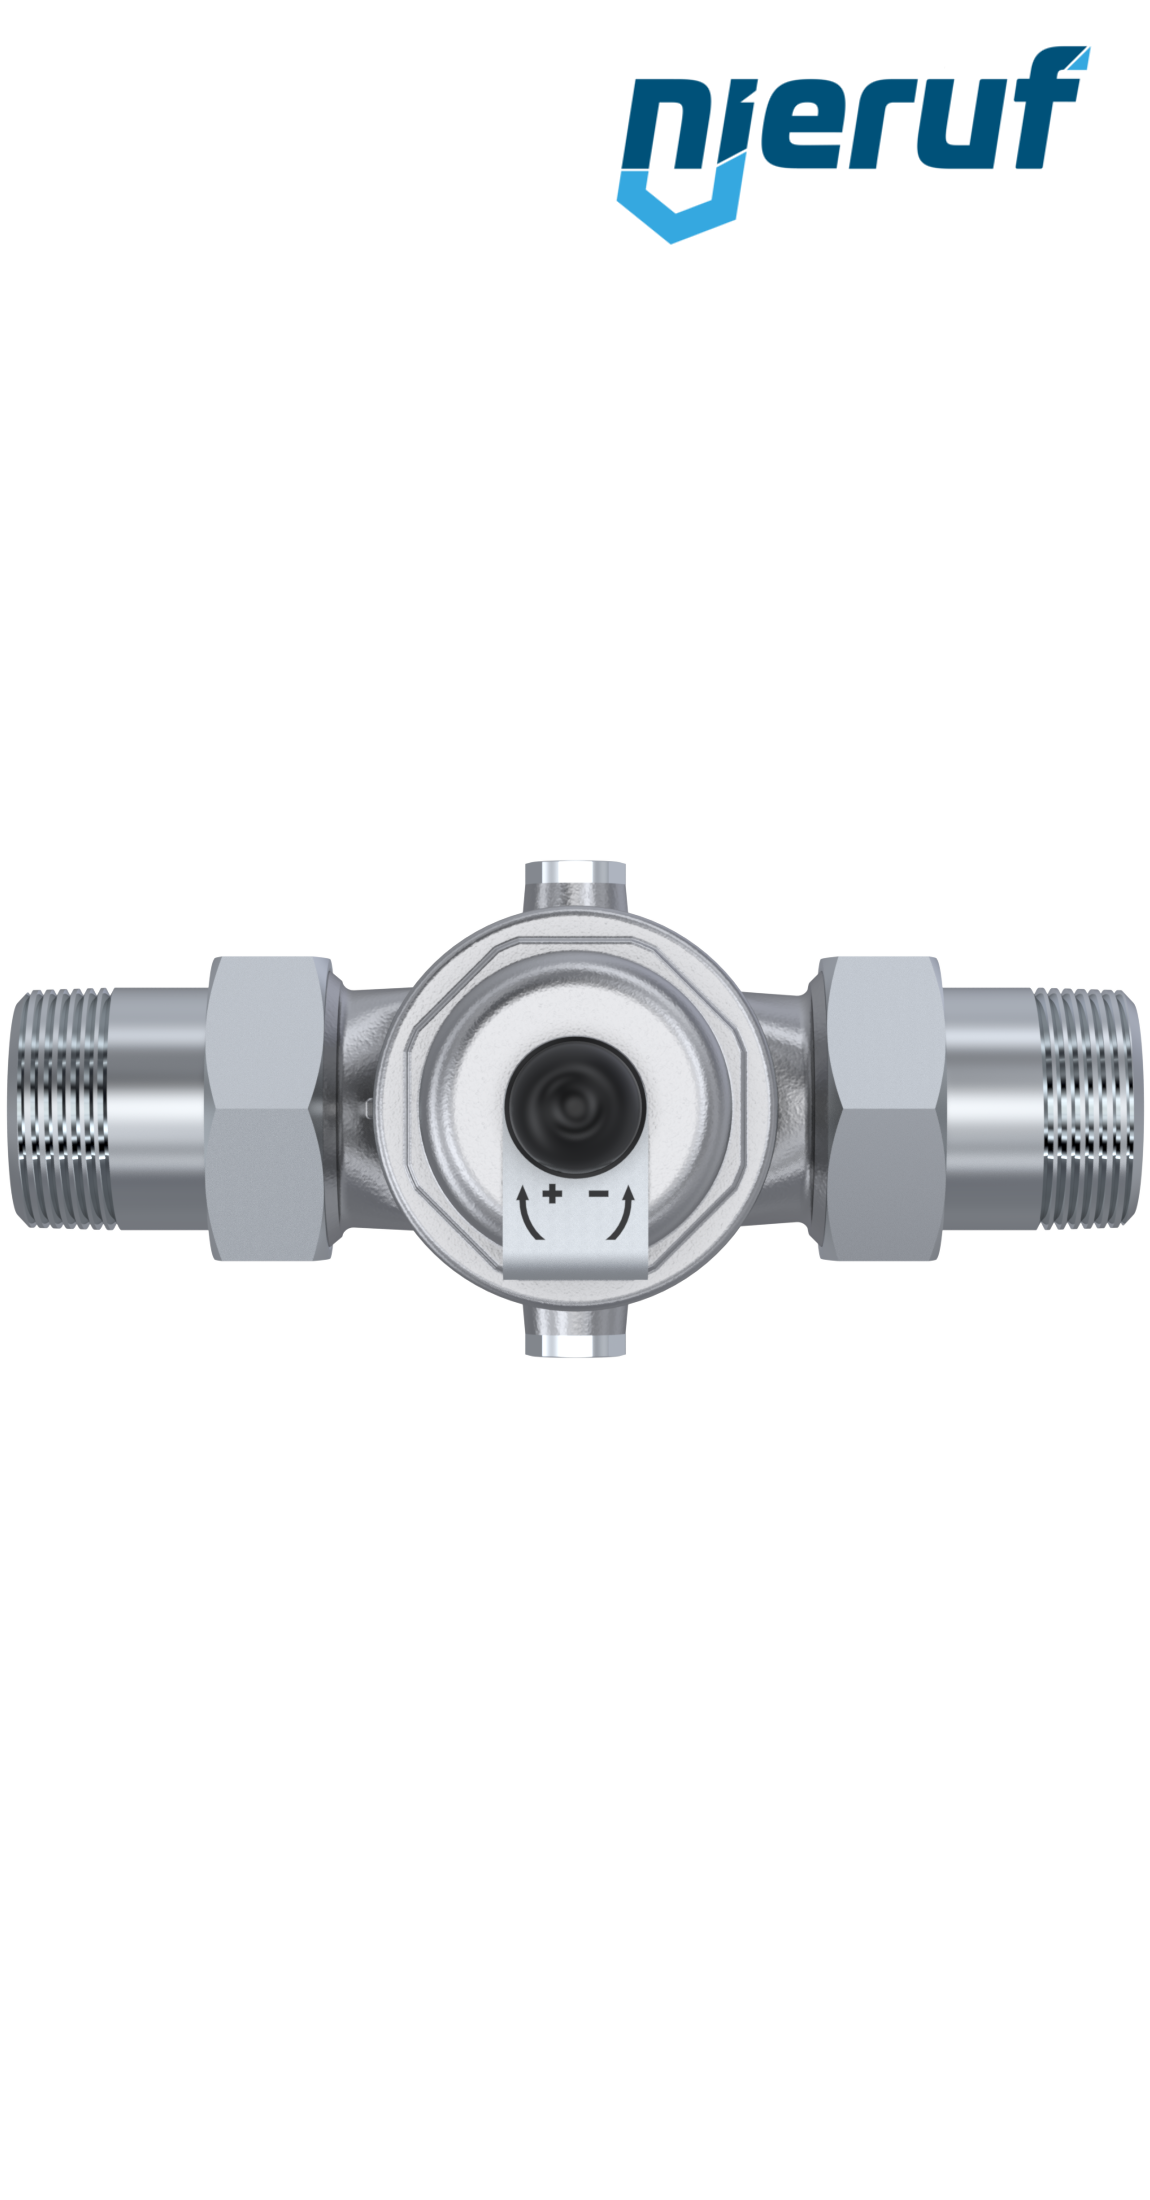 pressure reducing valve 1 1/2" inch male thread DM04 stainless steel FKM 1.0 - 8.0 bar